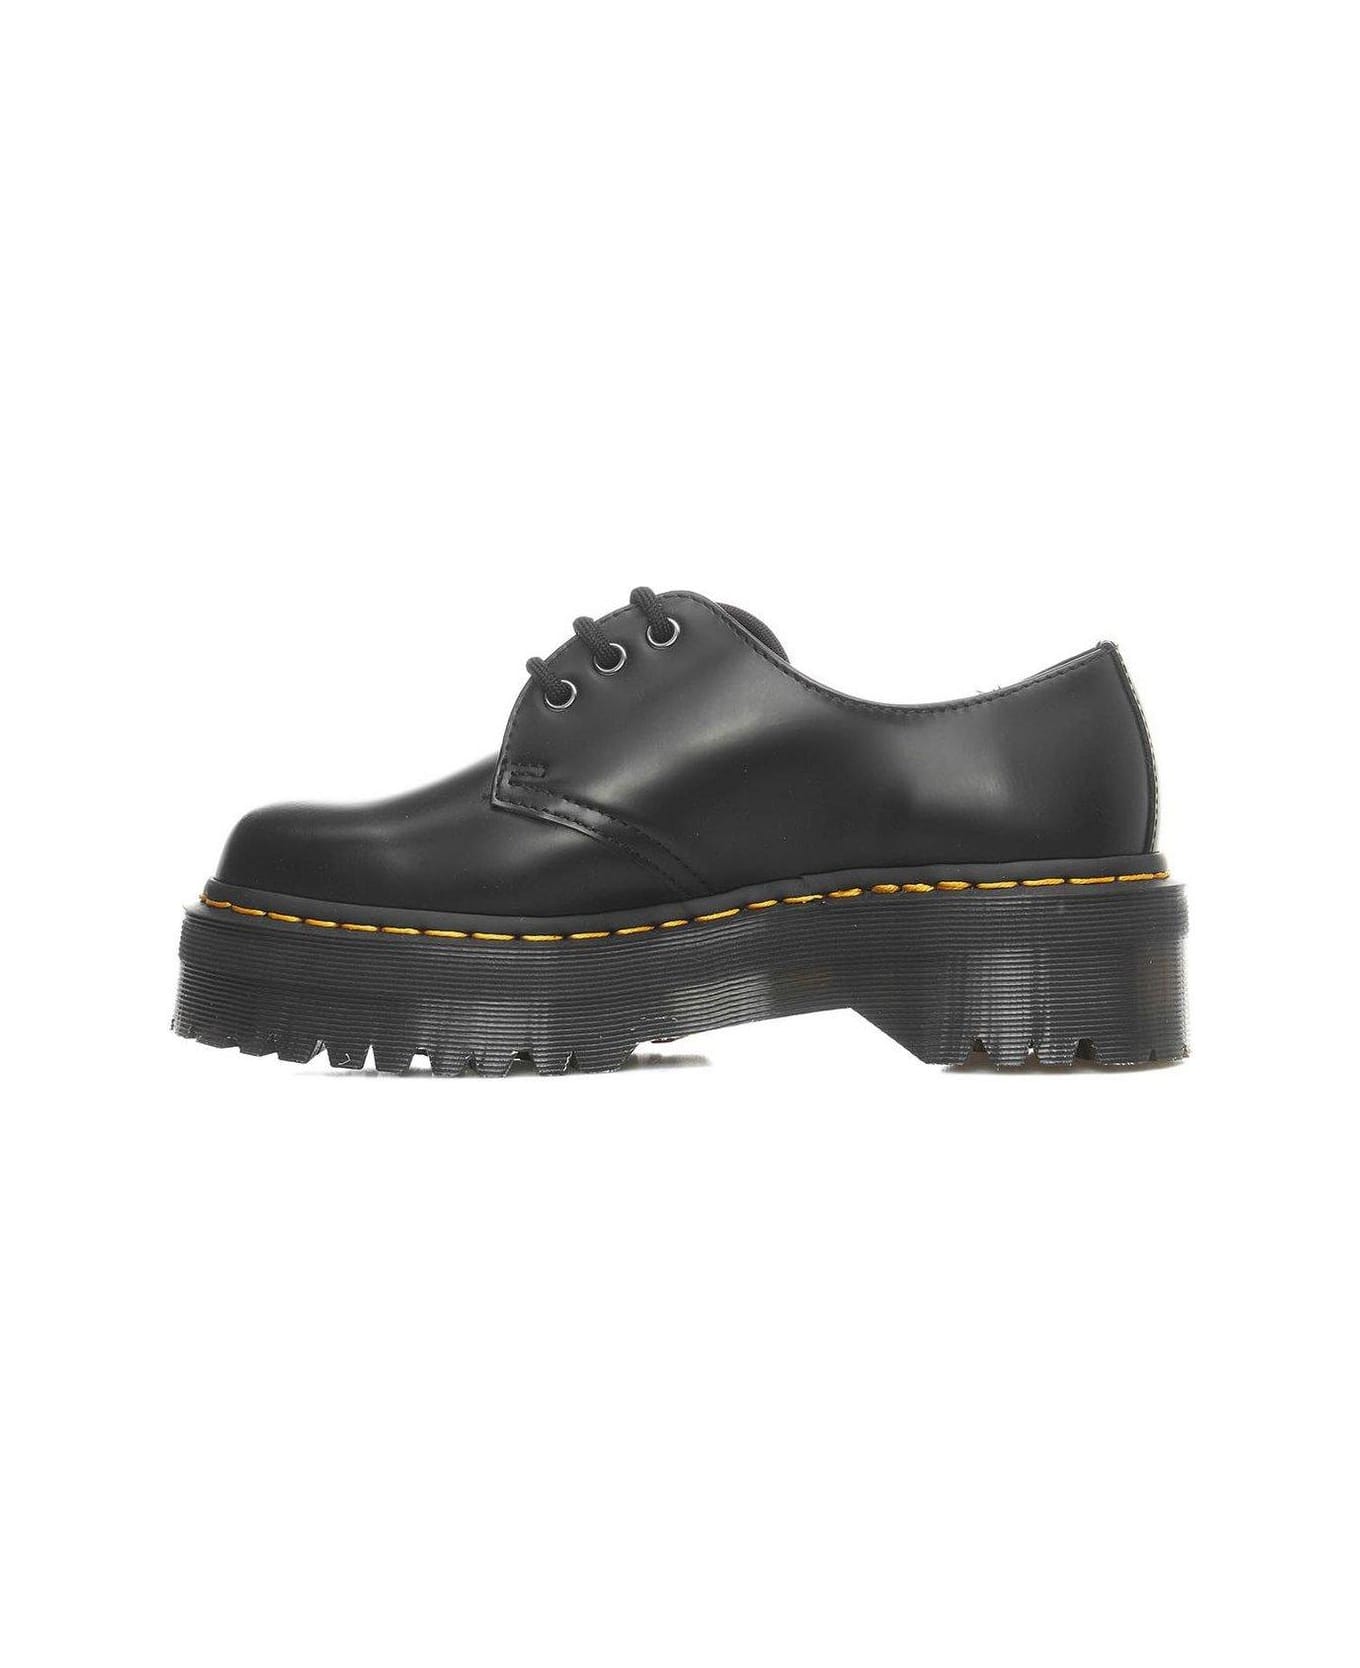 Dr. Martens 1461 Quad Platform Leather Shoes - Black ウェッジシューズ